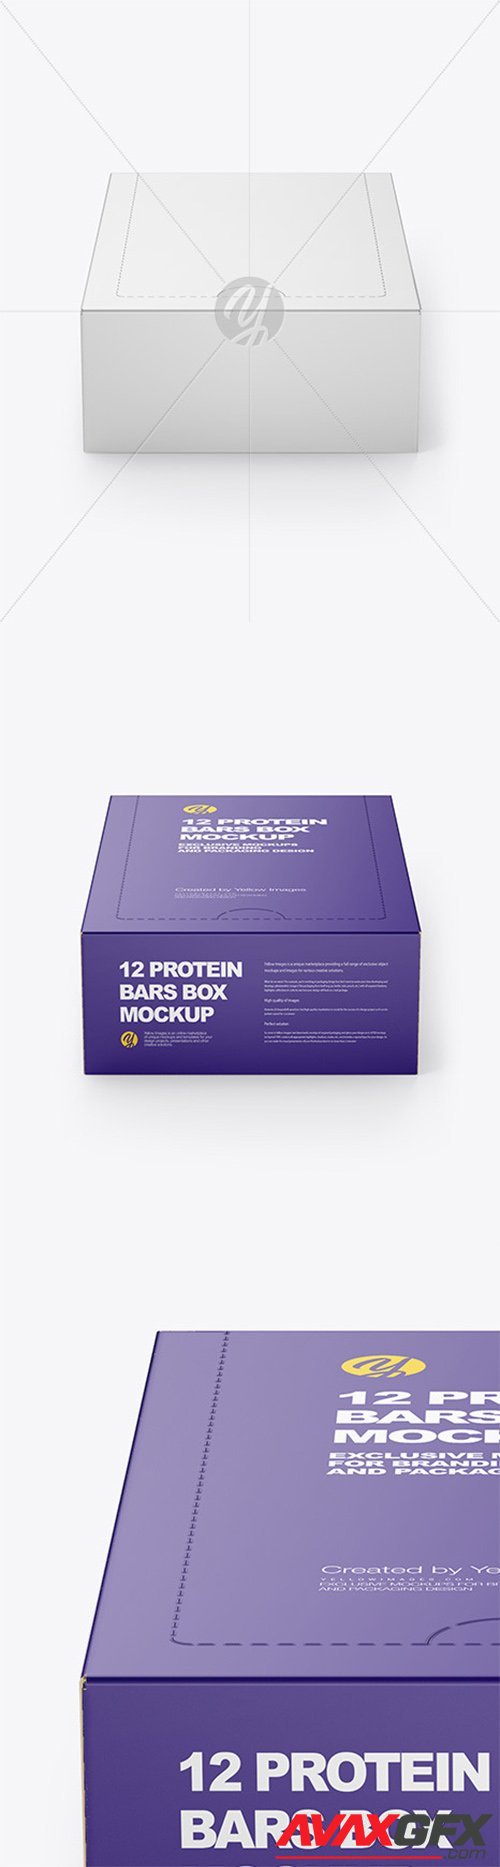 12 Protein Bars Box Mockup 55400